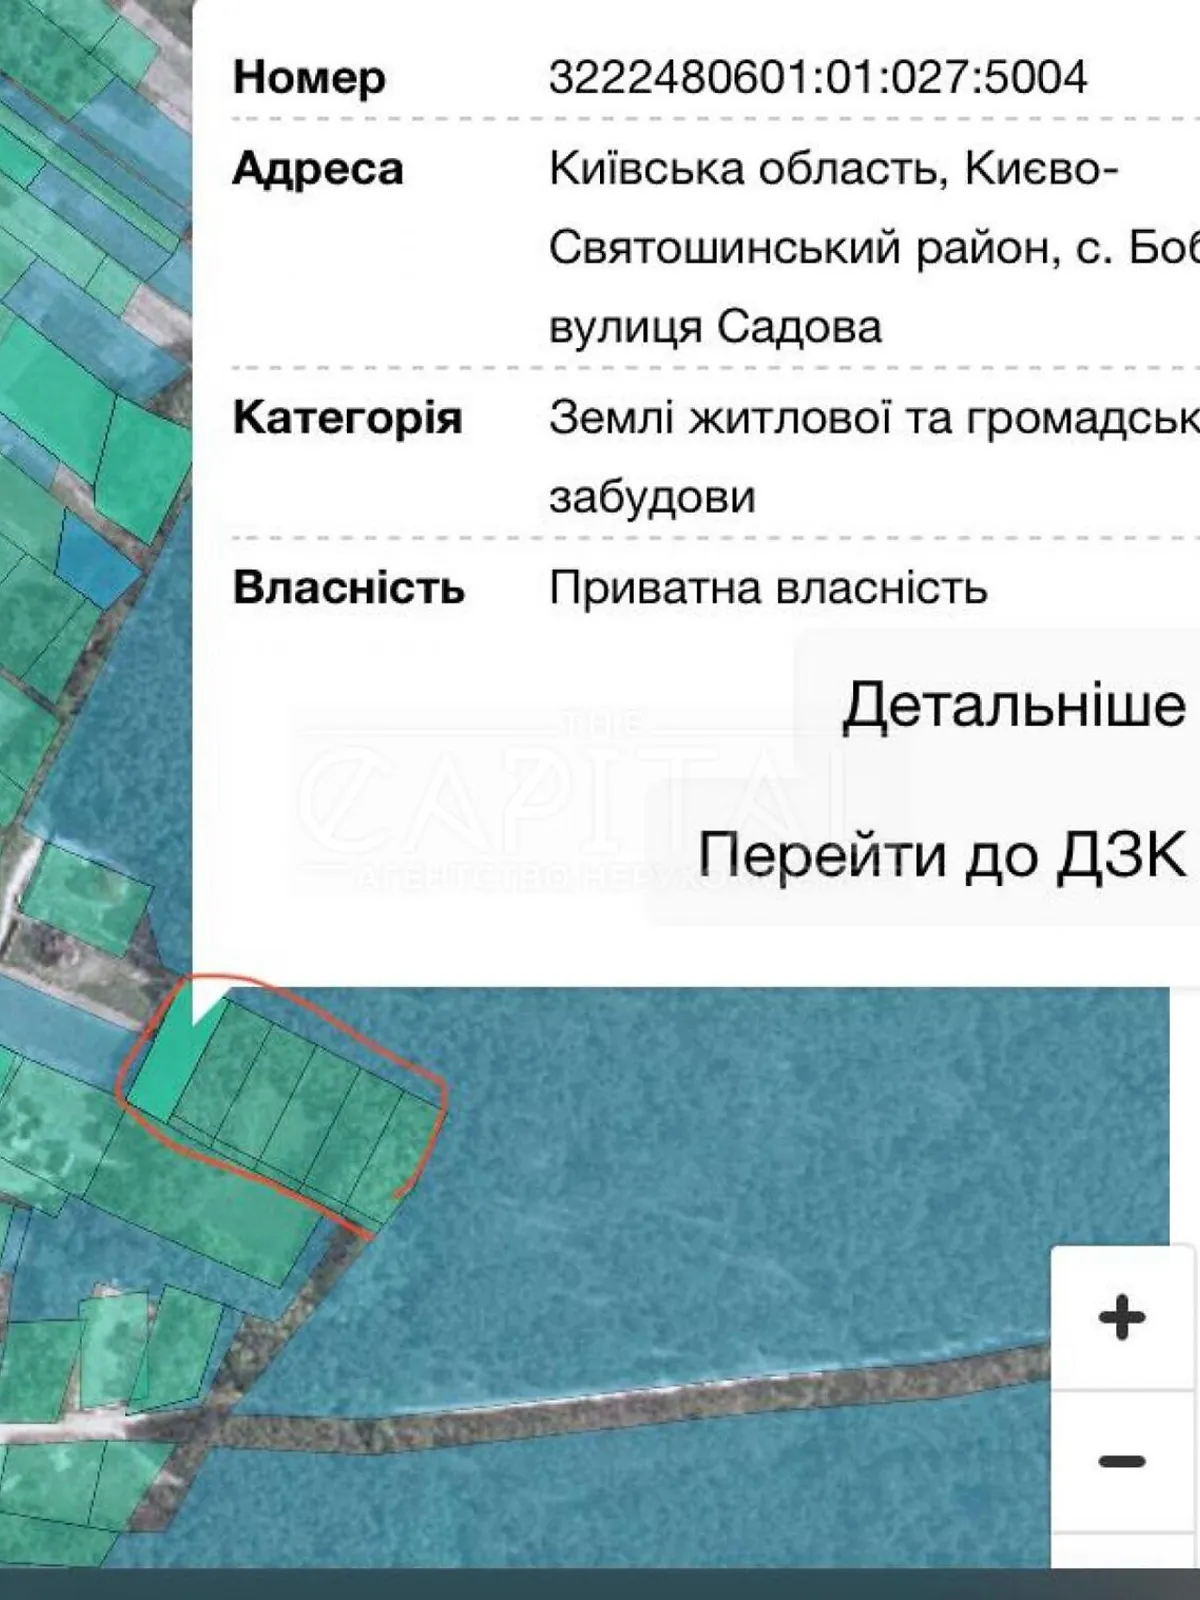 Продается земельный участок 87 соток в Киевской области - фото 2